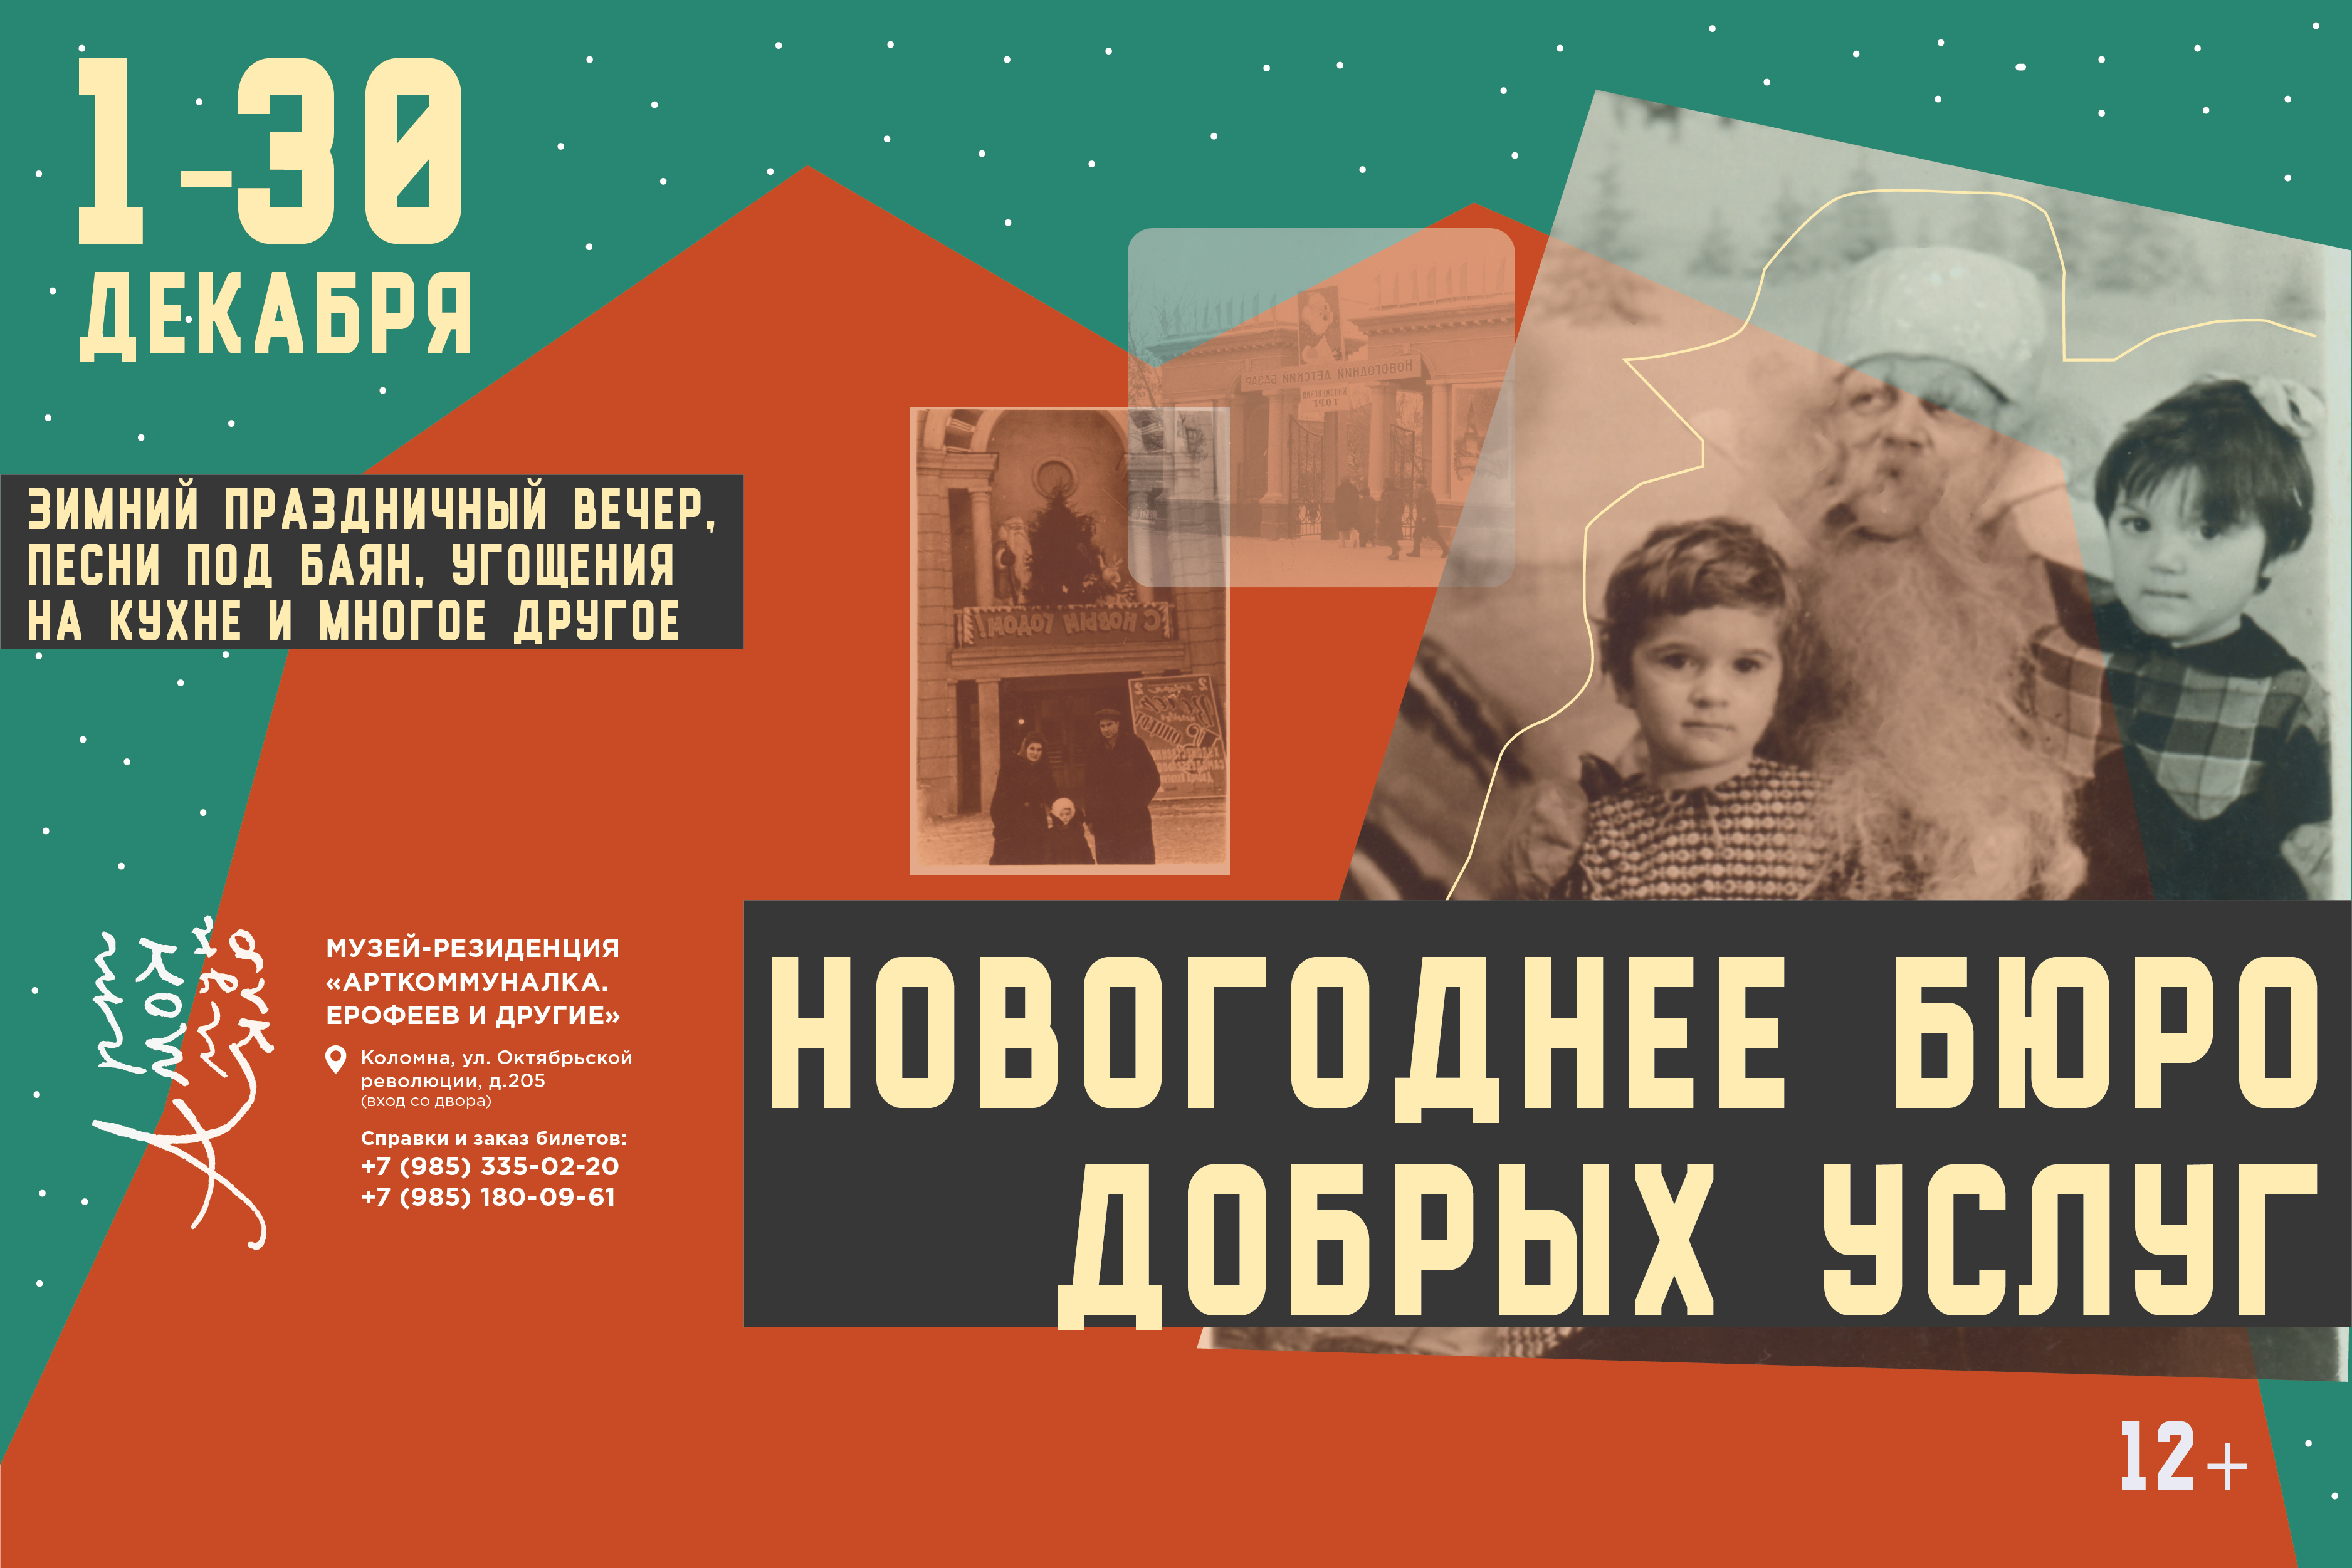 Советский Новый Год в музее «Арткоммуналка. Ерофее и другие»